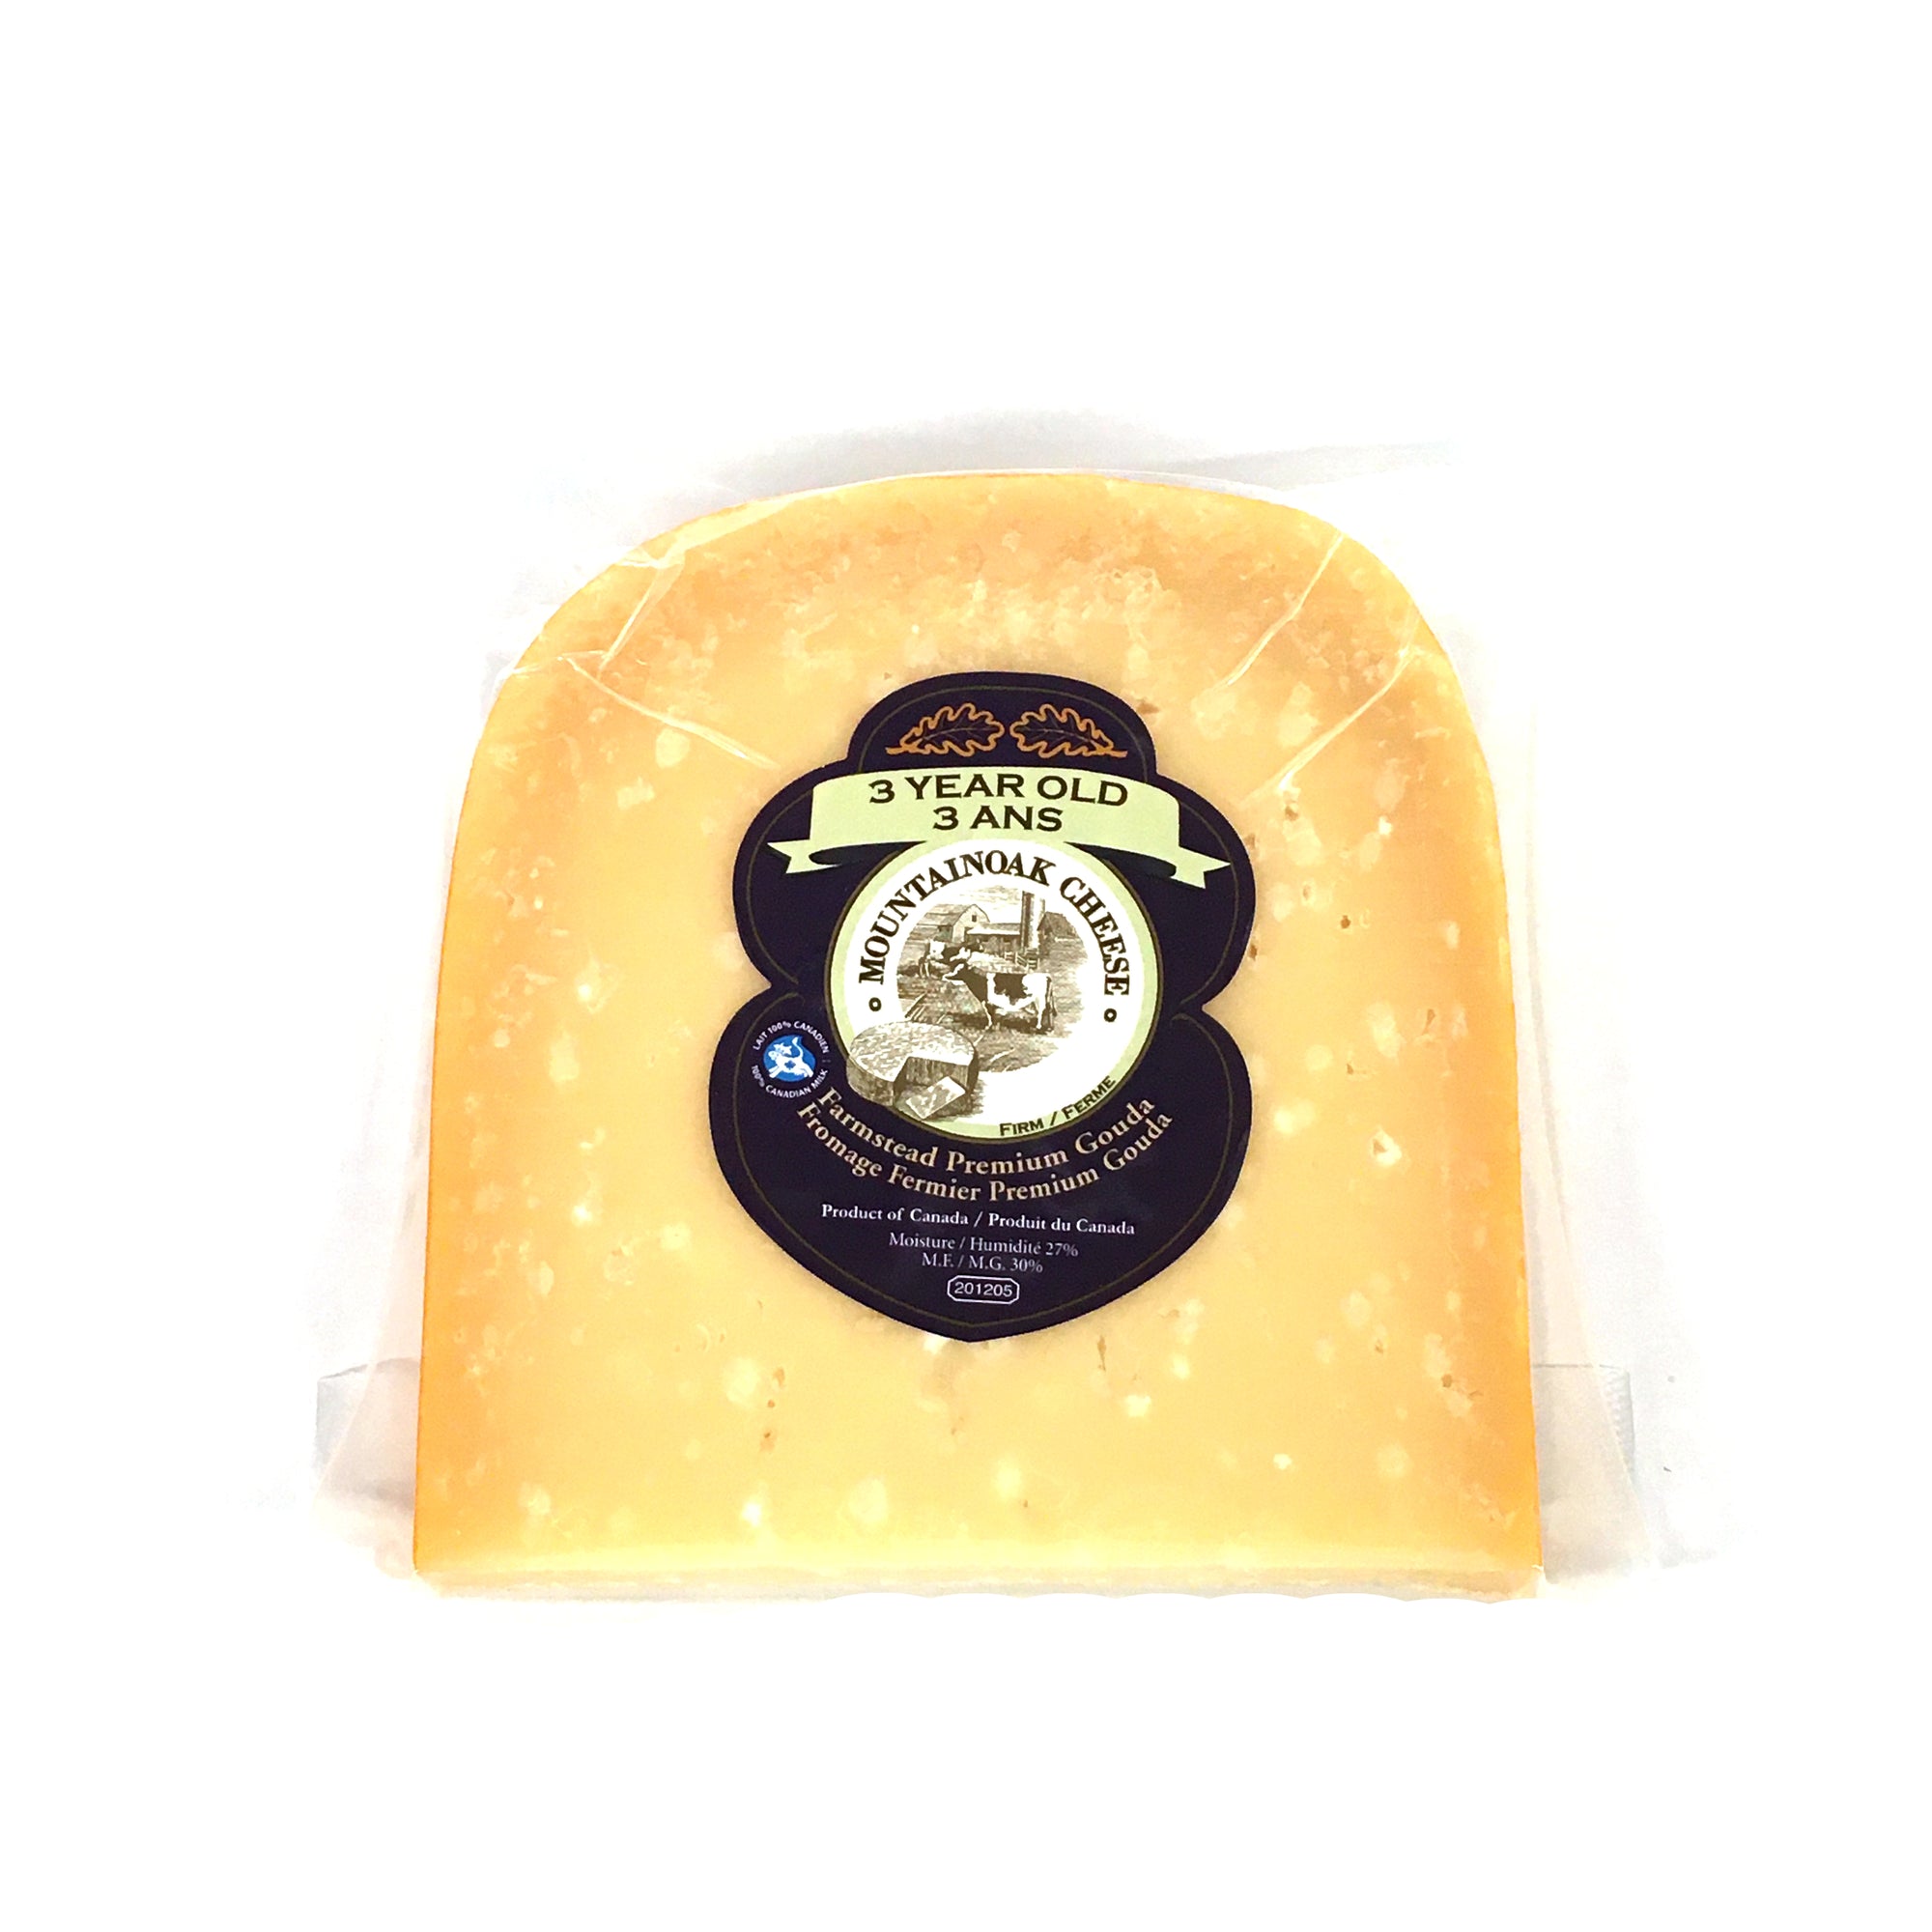 Mountainoak Cheese Gouda 3 Year Old